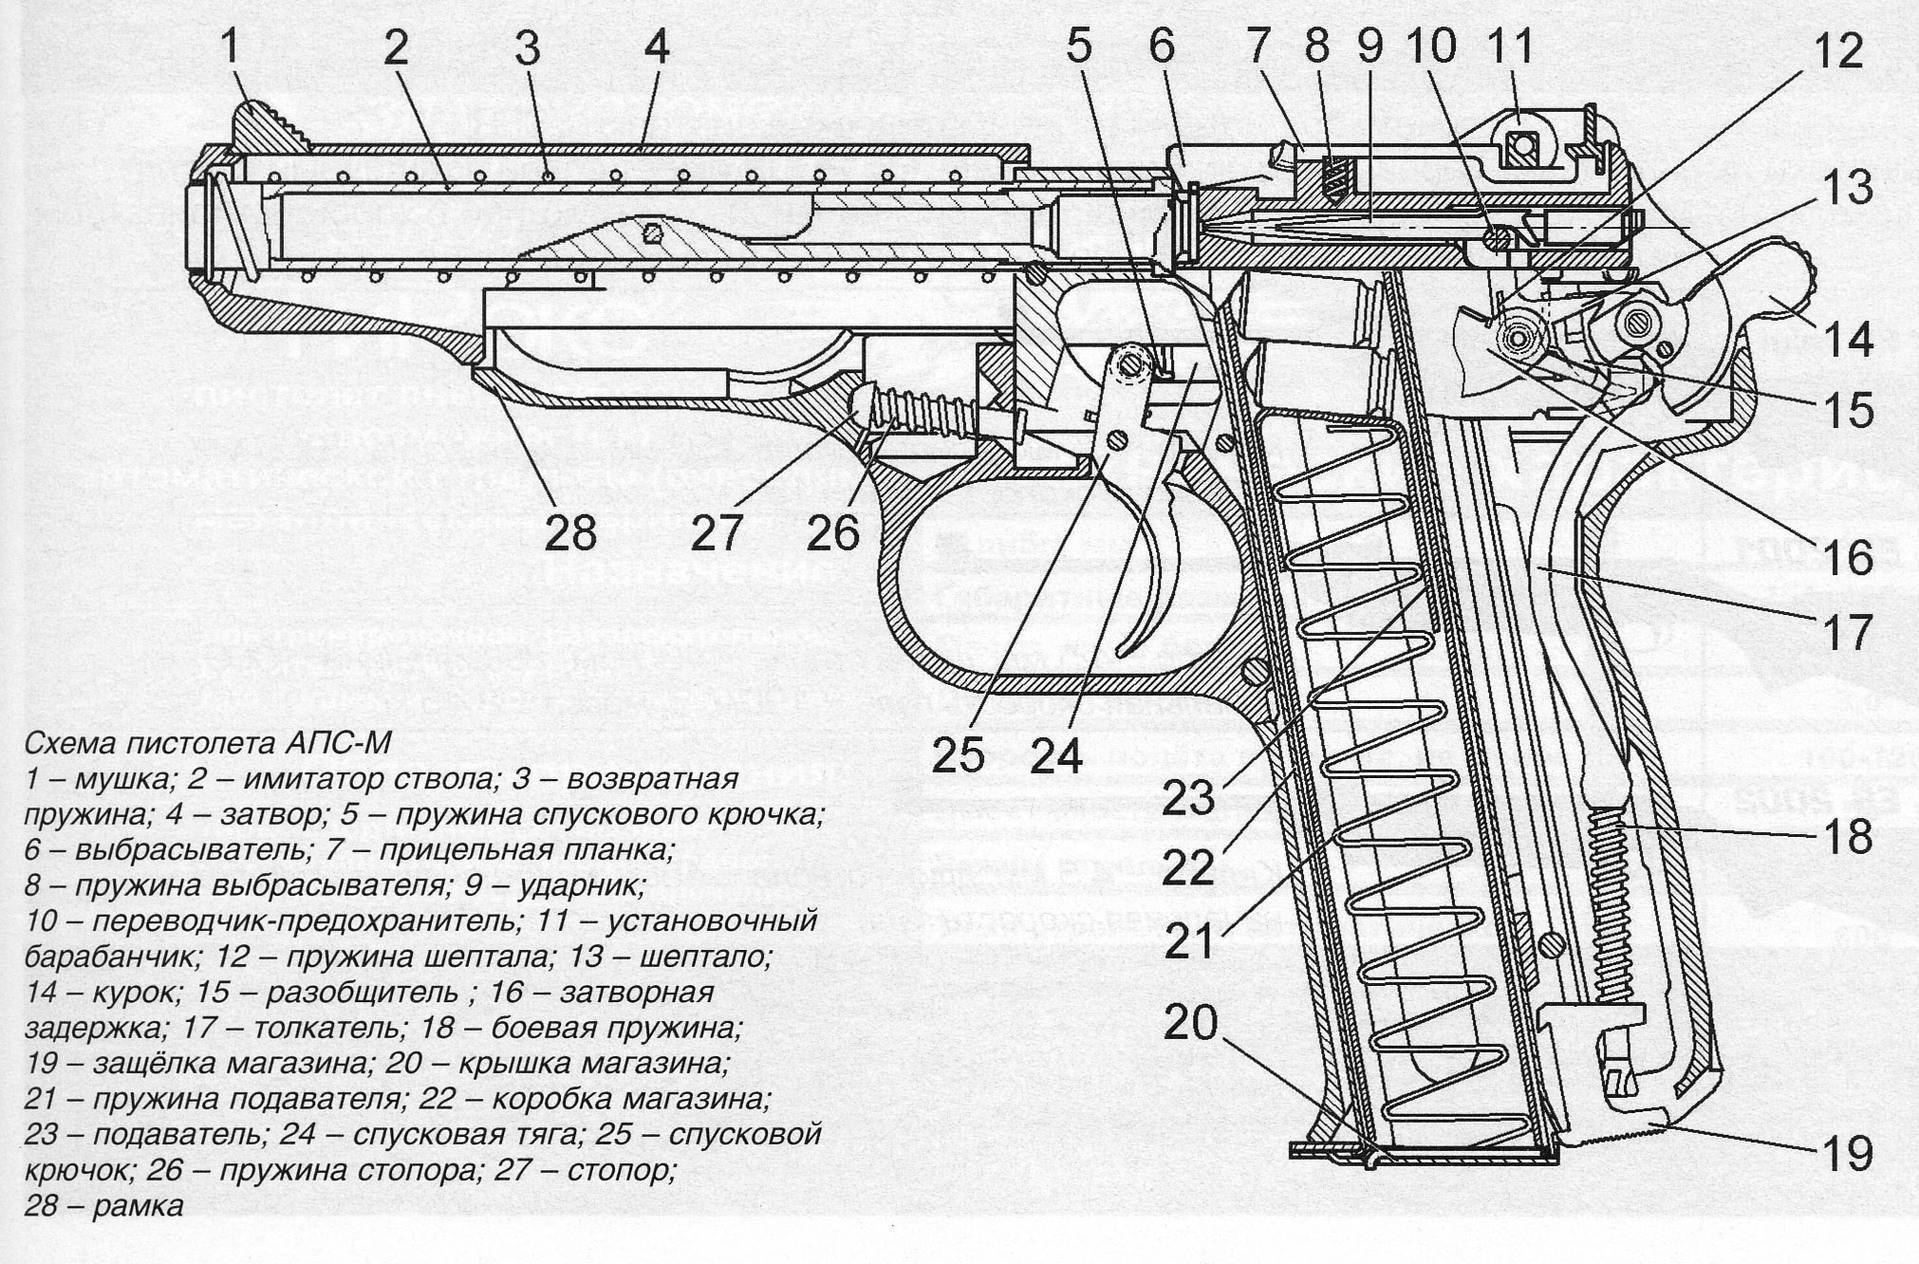 Автоматический пистолет стечкина википедия